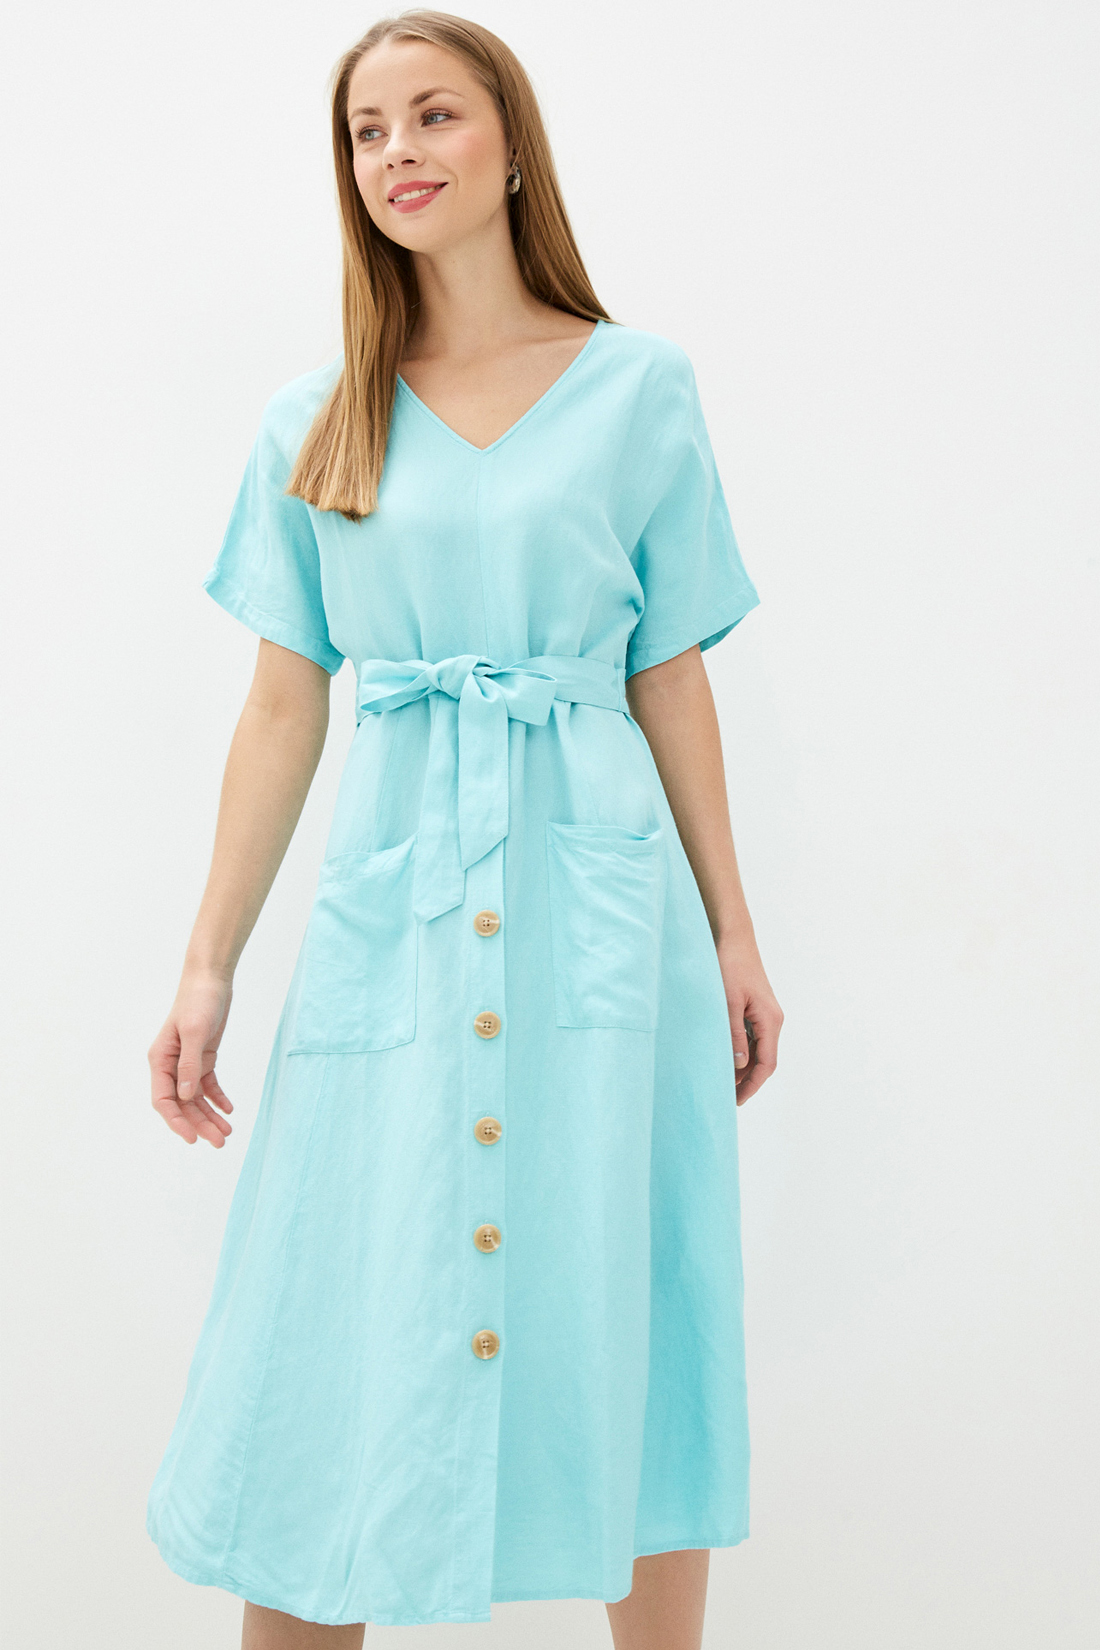 Платье (арт. baon B450056), размер L, цвет голубой Платье (арт. baon B450056) - фото 4